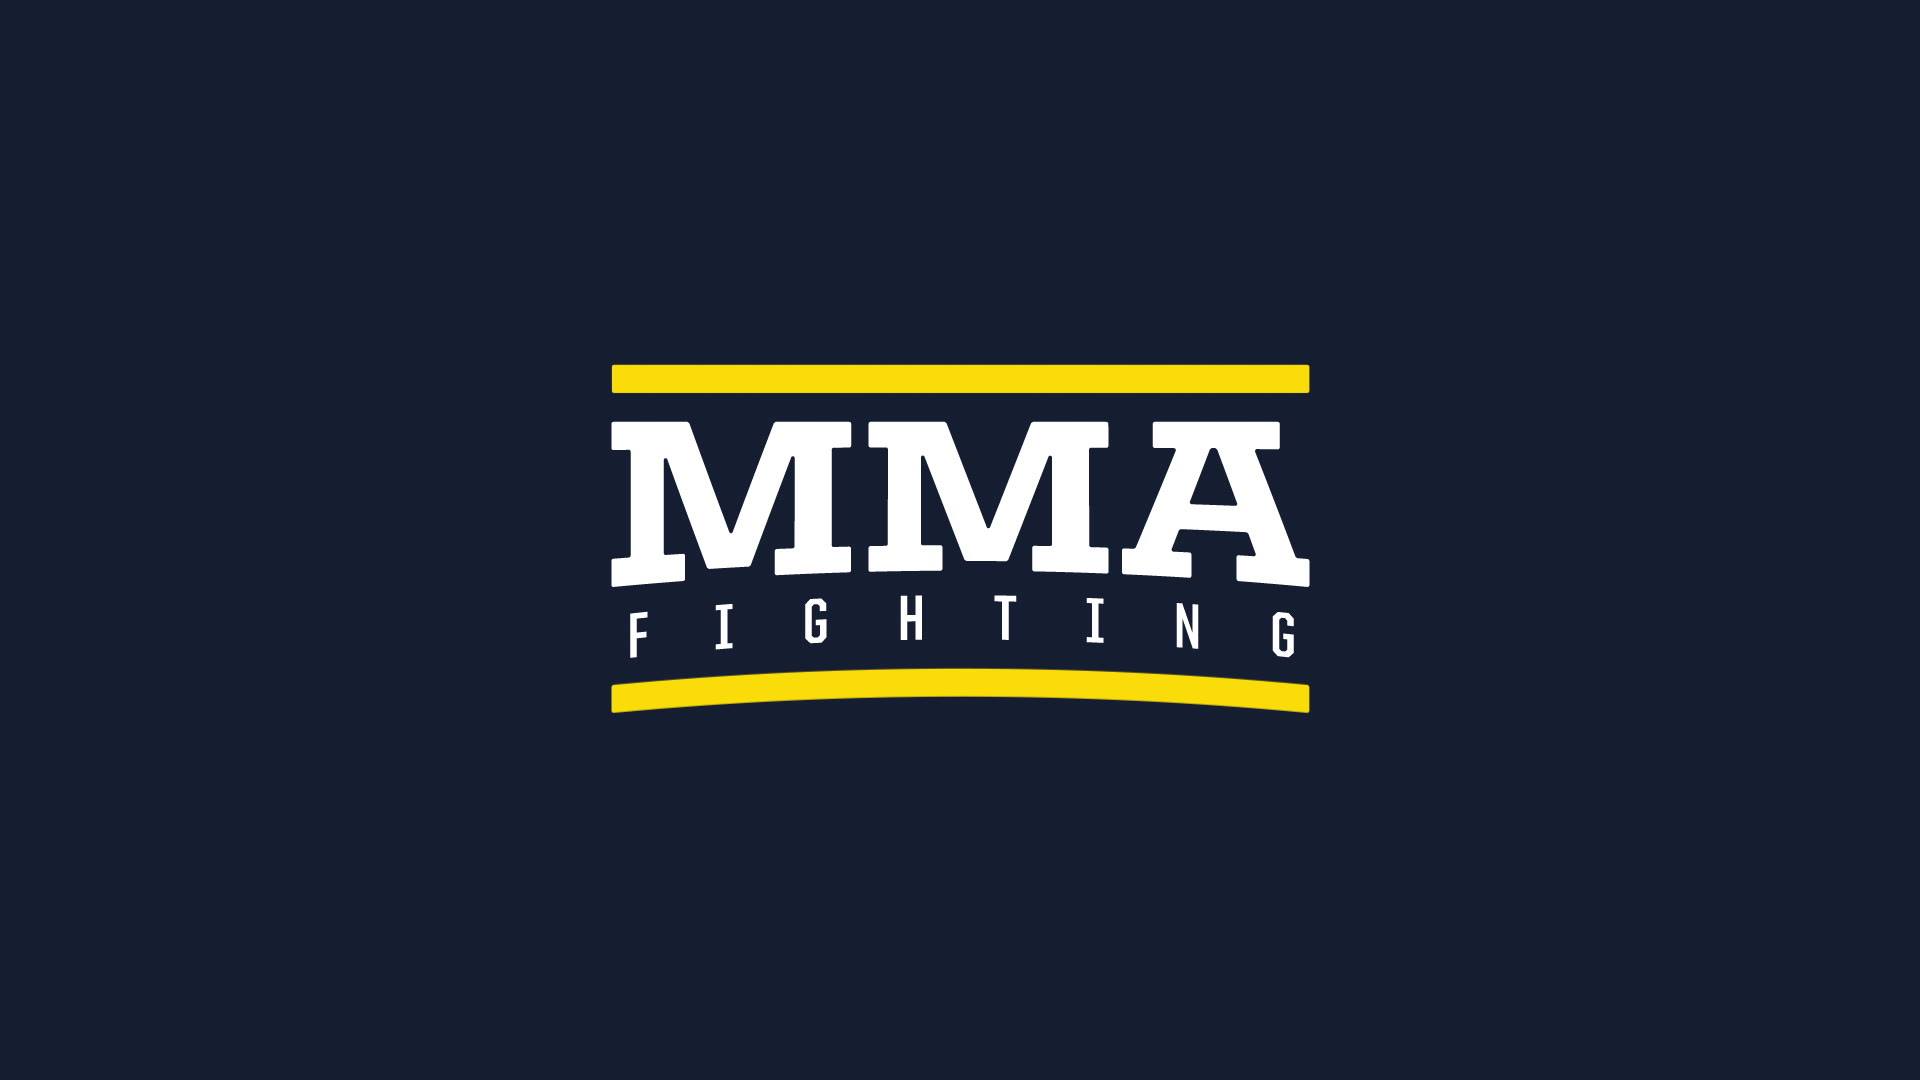 نشرة أخبار القتال والفنون المختلطة MMA  بتاريخ 2018.3.11